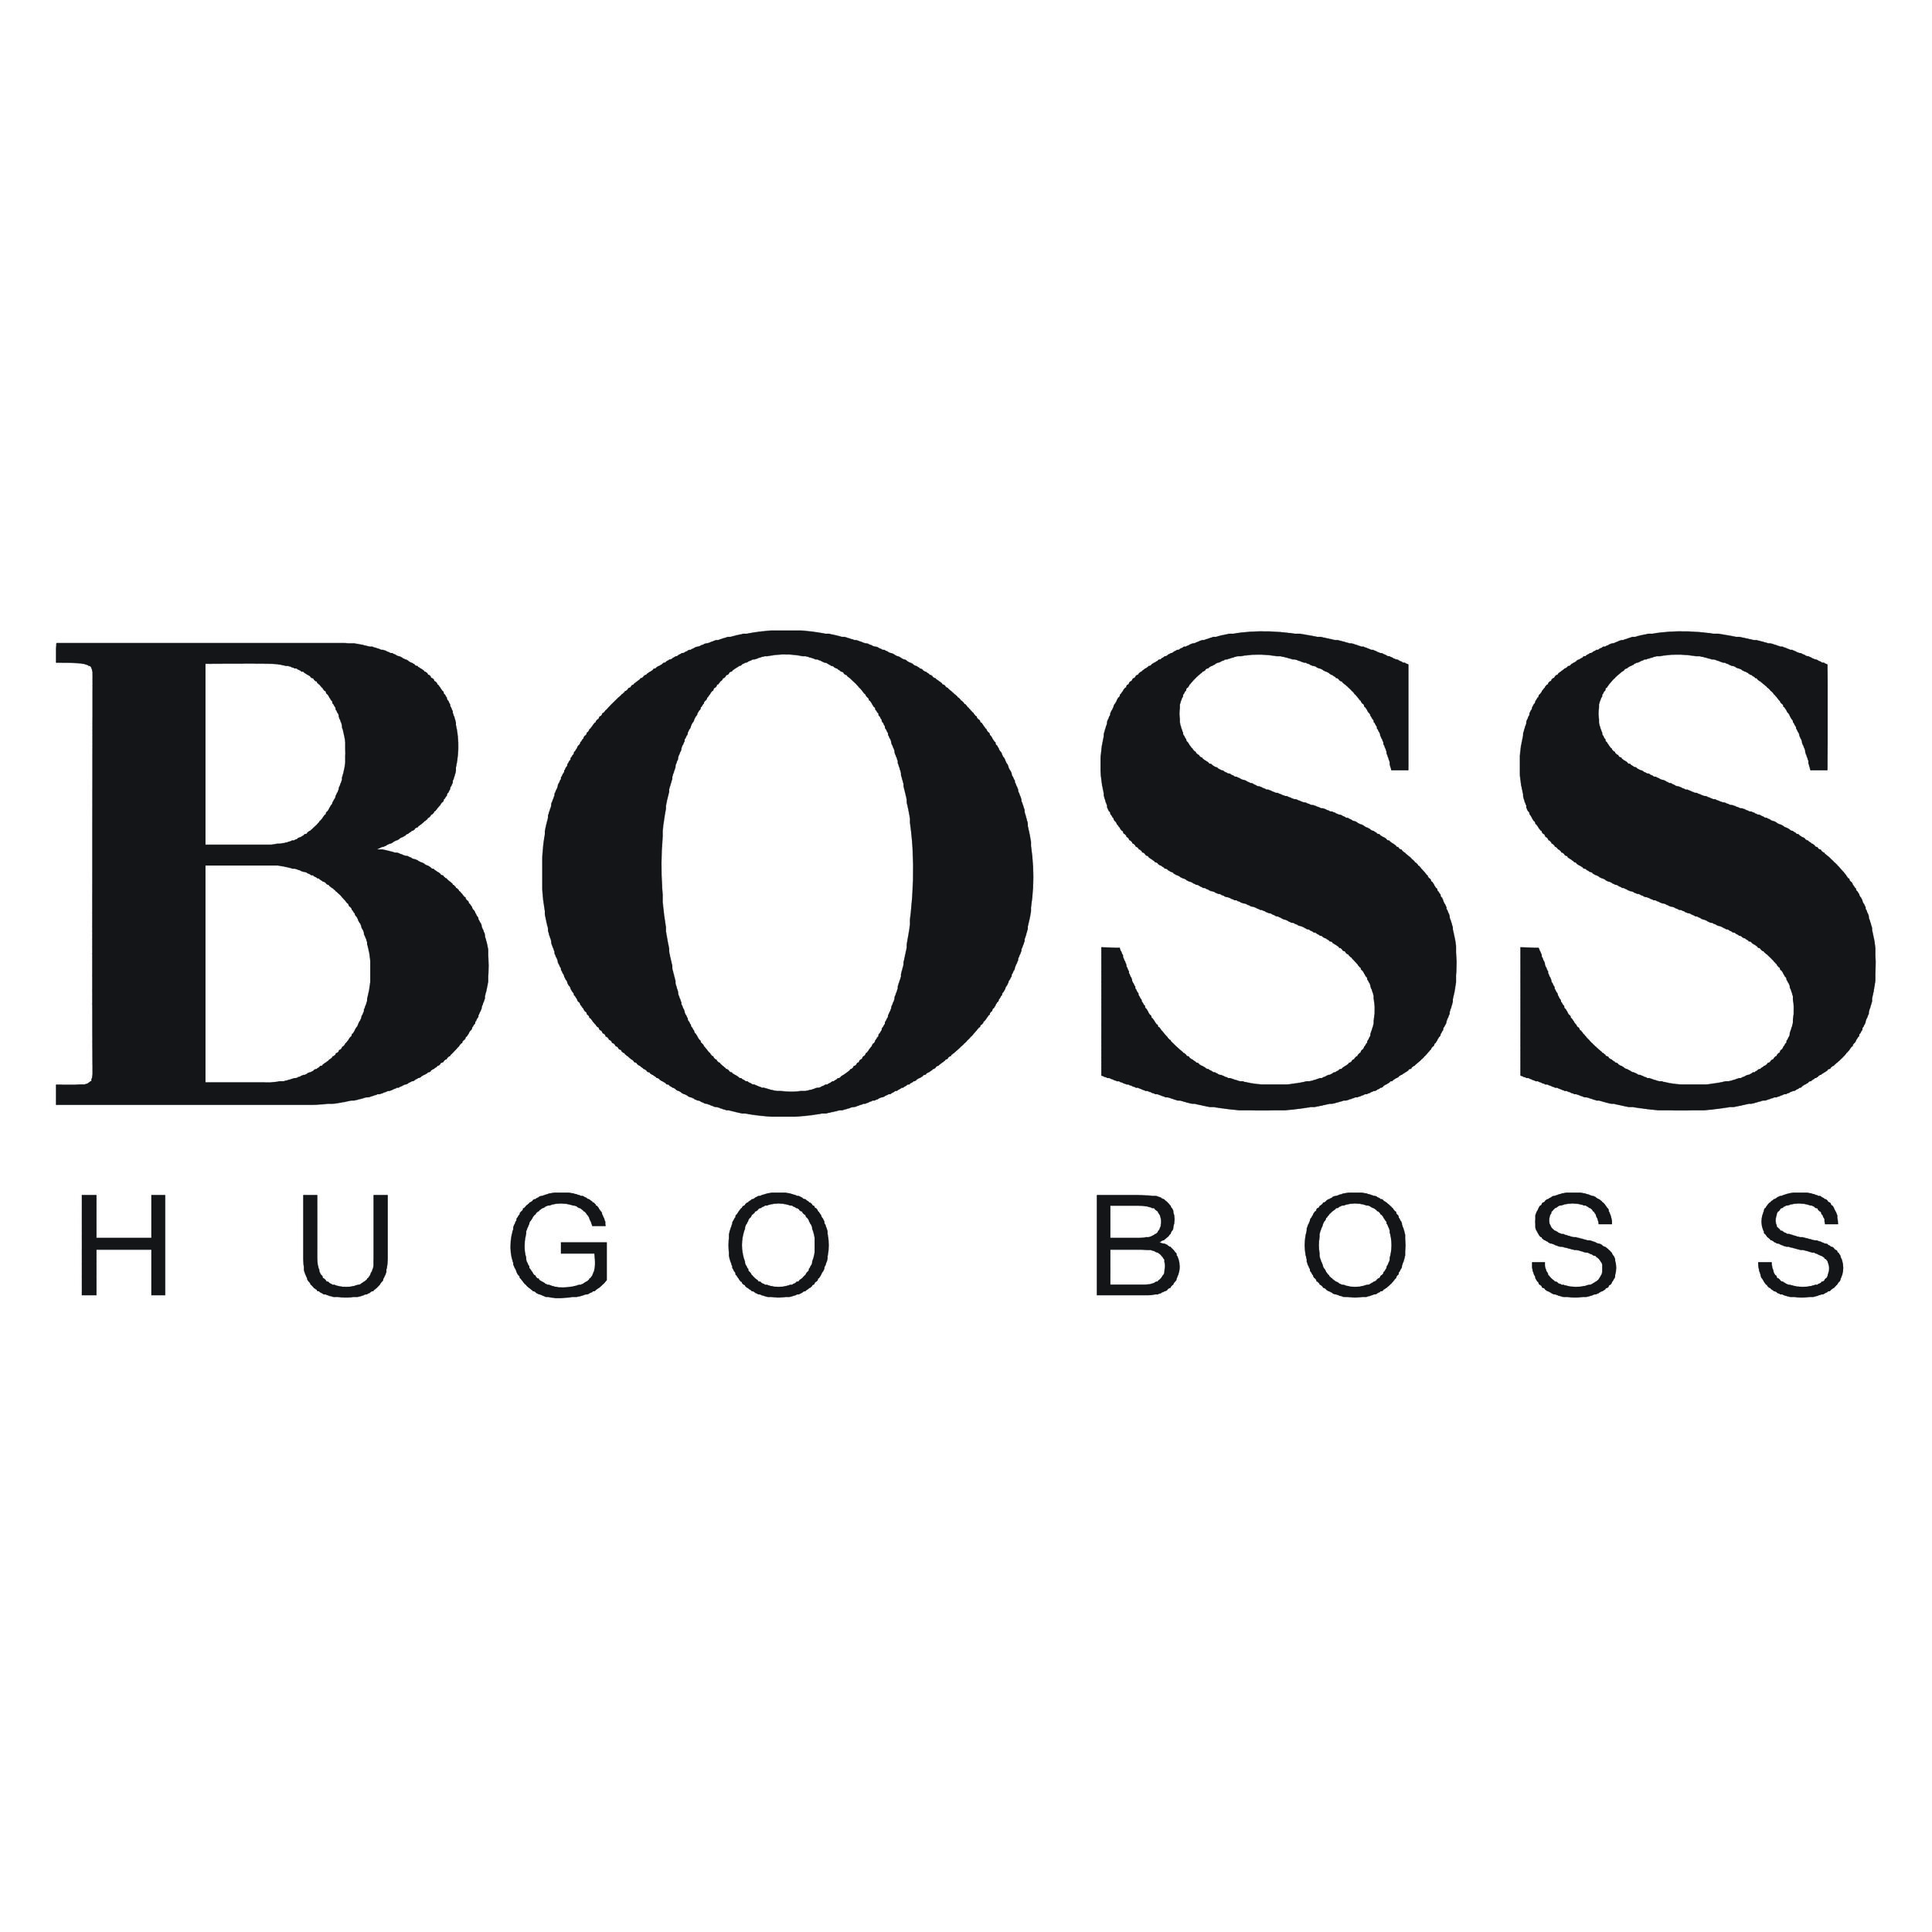 Hugo Boss-01.jpg